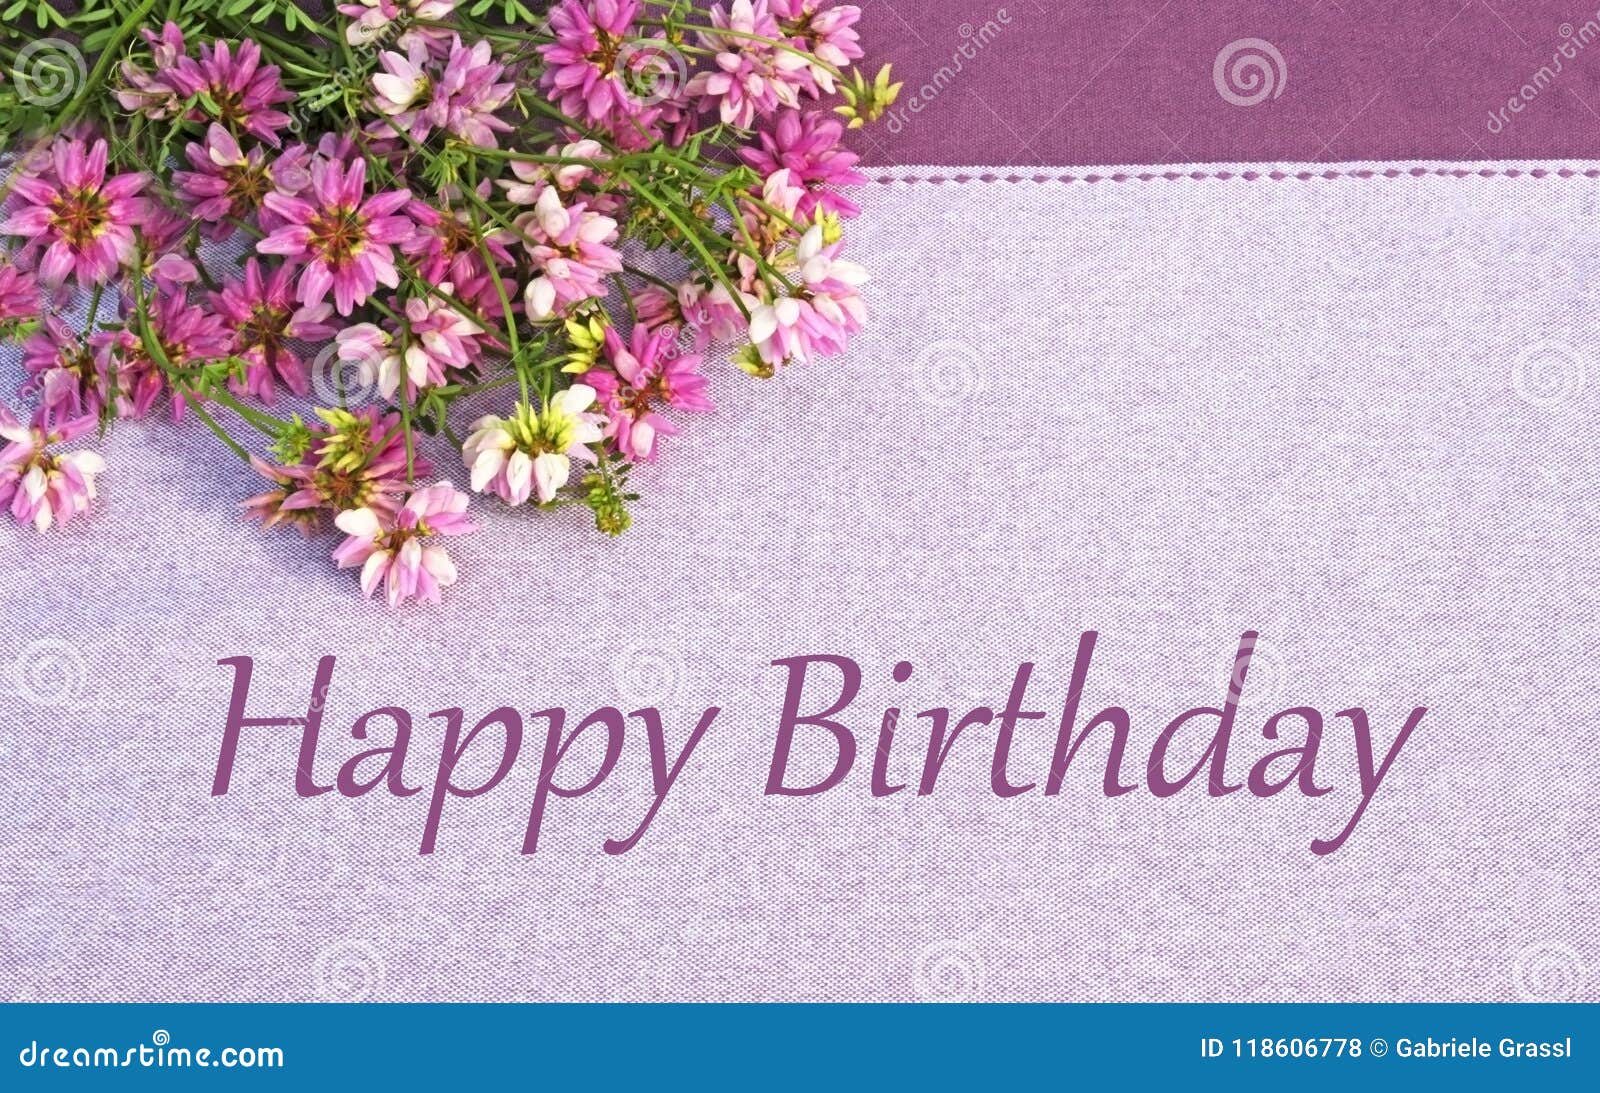 birthday greeting card purple wildflowers birthday greeting card purple wildflowers tablecloth purple 118606778